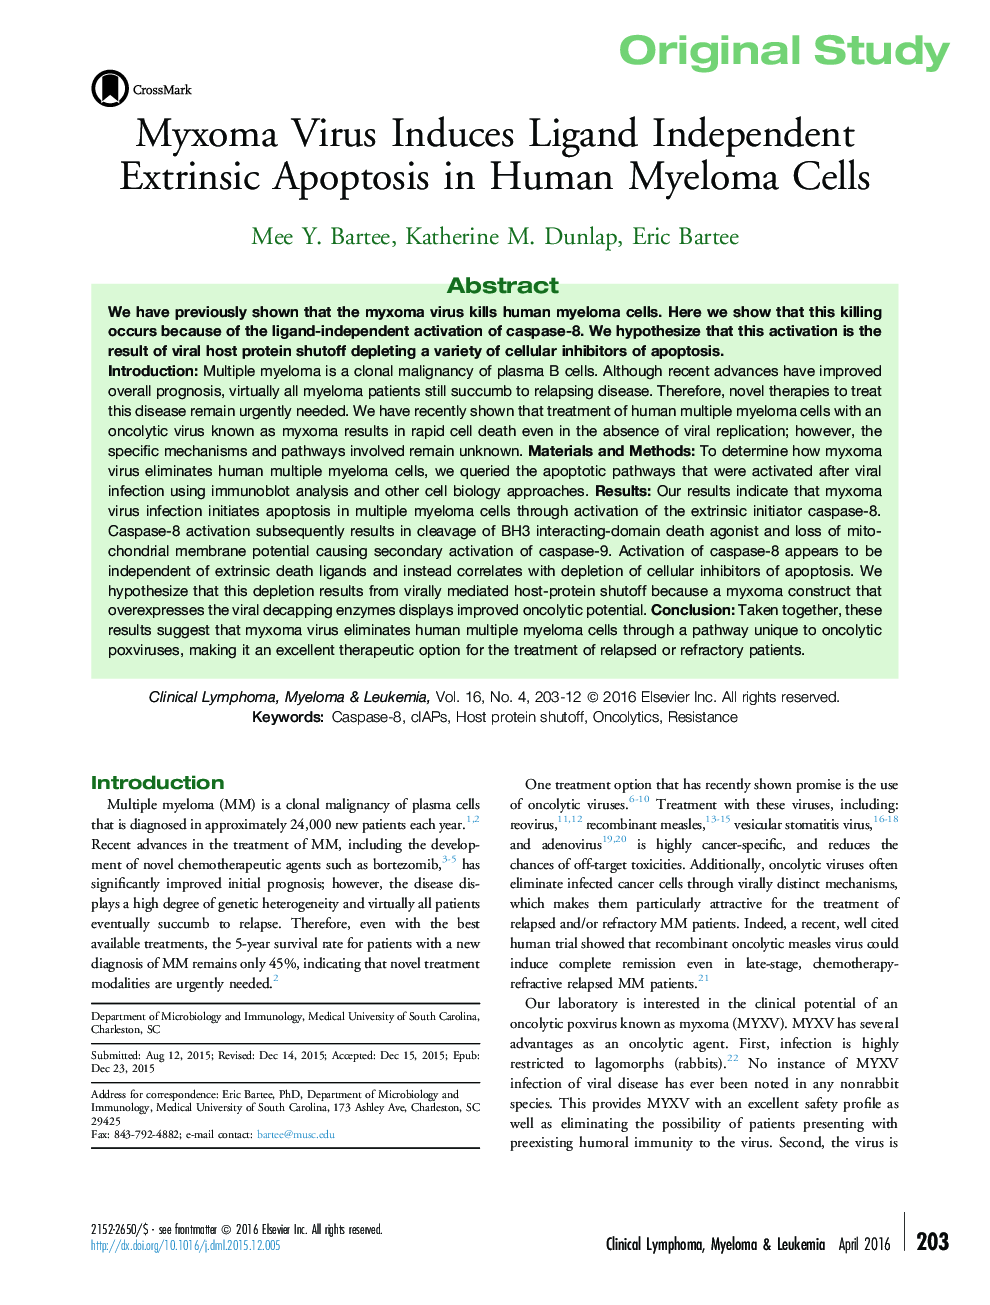 ویروس مایکومای مایع منی باعث آپوپتوز بیگانه مستقل لیگاند در سلول های بنیادی انسانی می شود. 